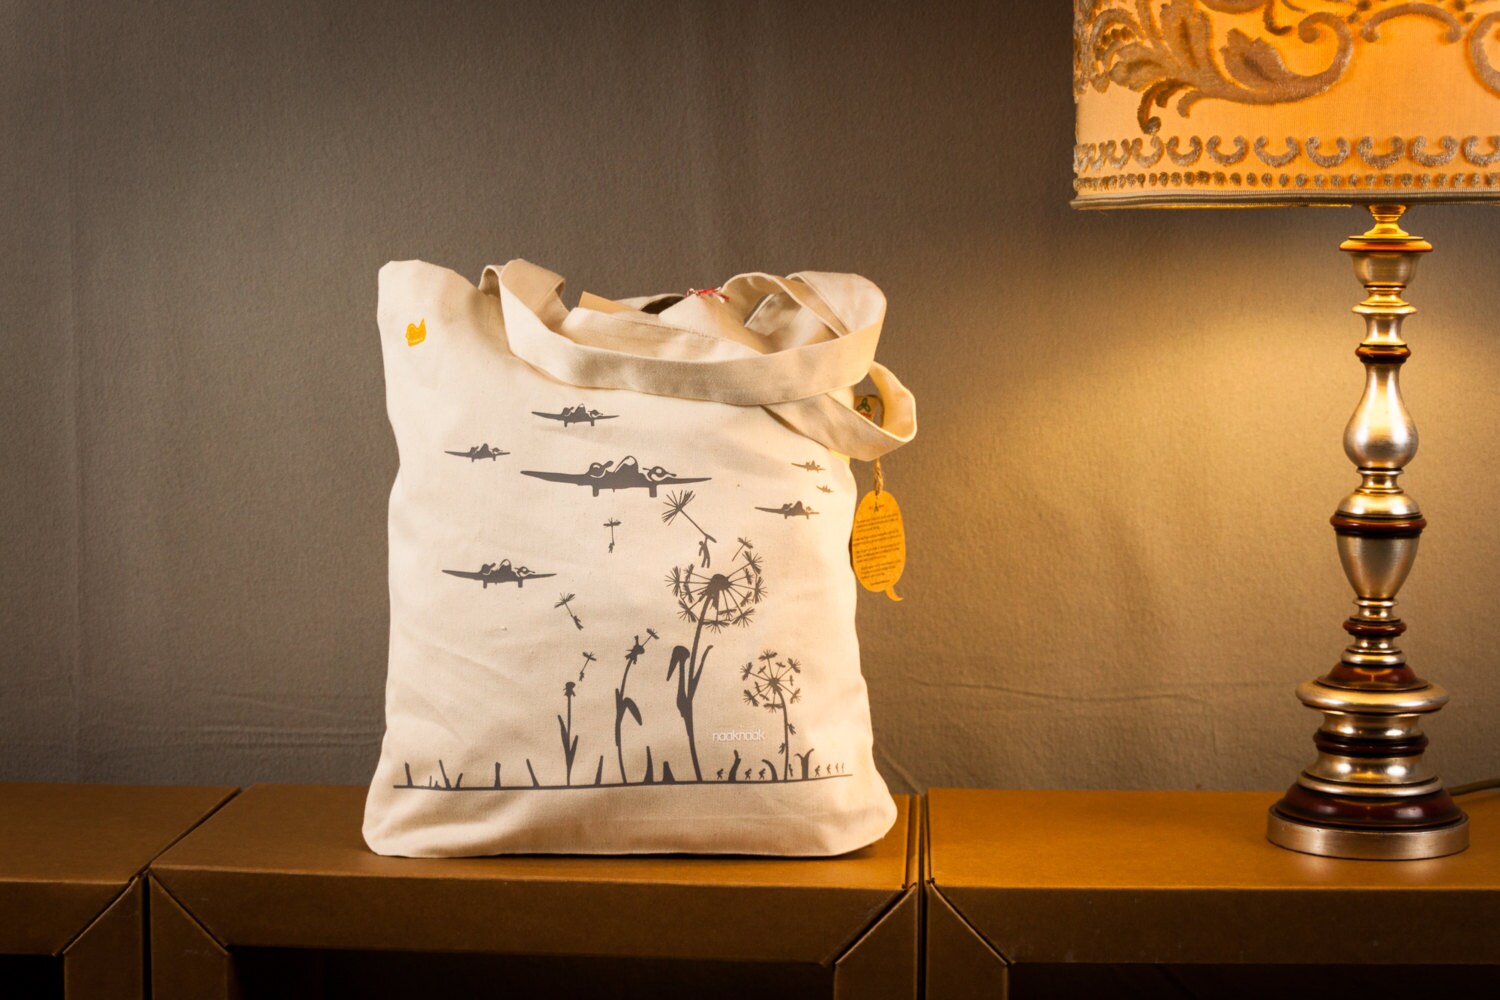 Coole Einkaufstasche Mit Pusteblume Aufdruck/Jutebeutel Farbe Natur Beige - Motiv Hellgrau Pusteblumen Und Flugzeug von naaknaak